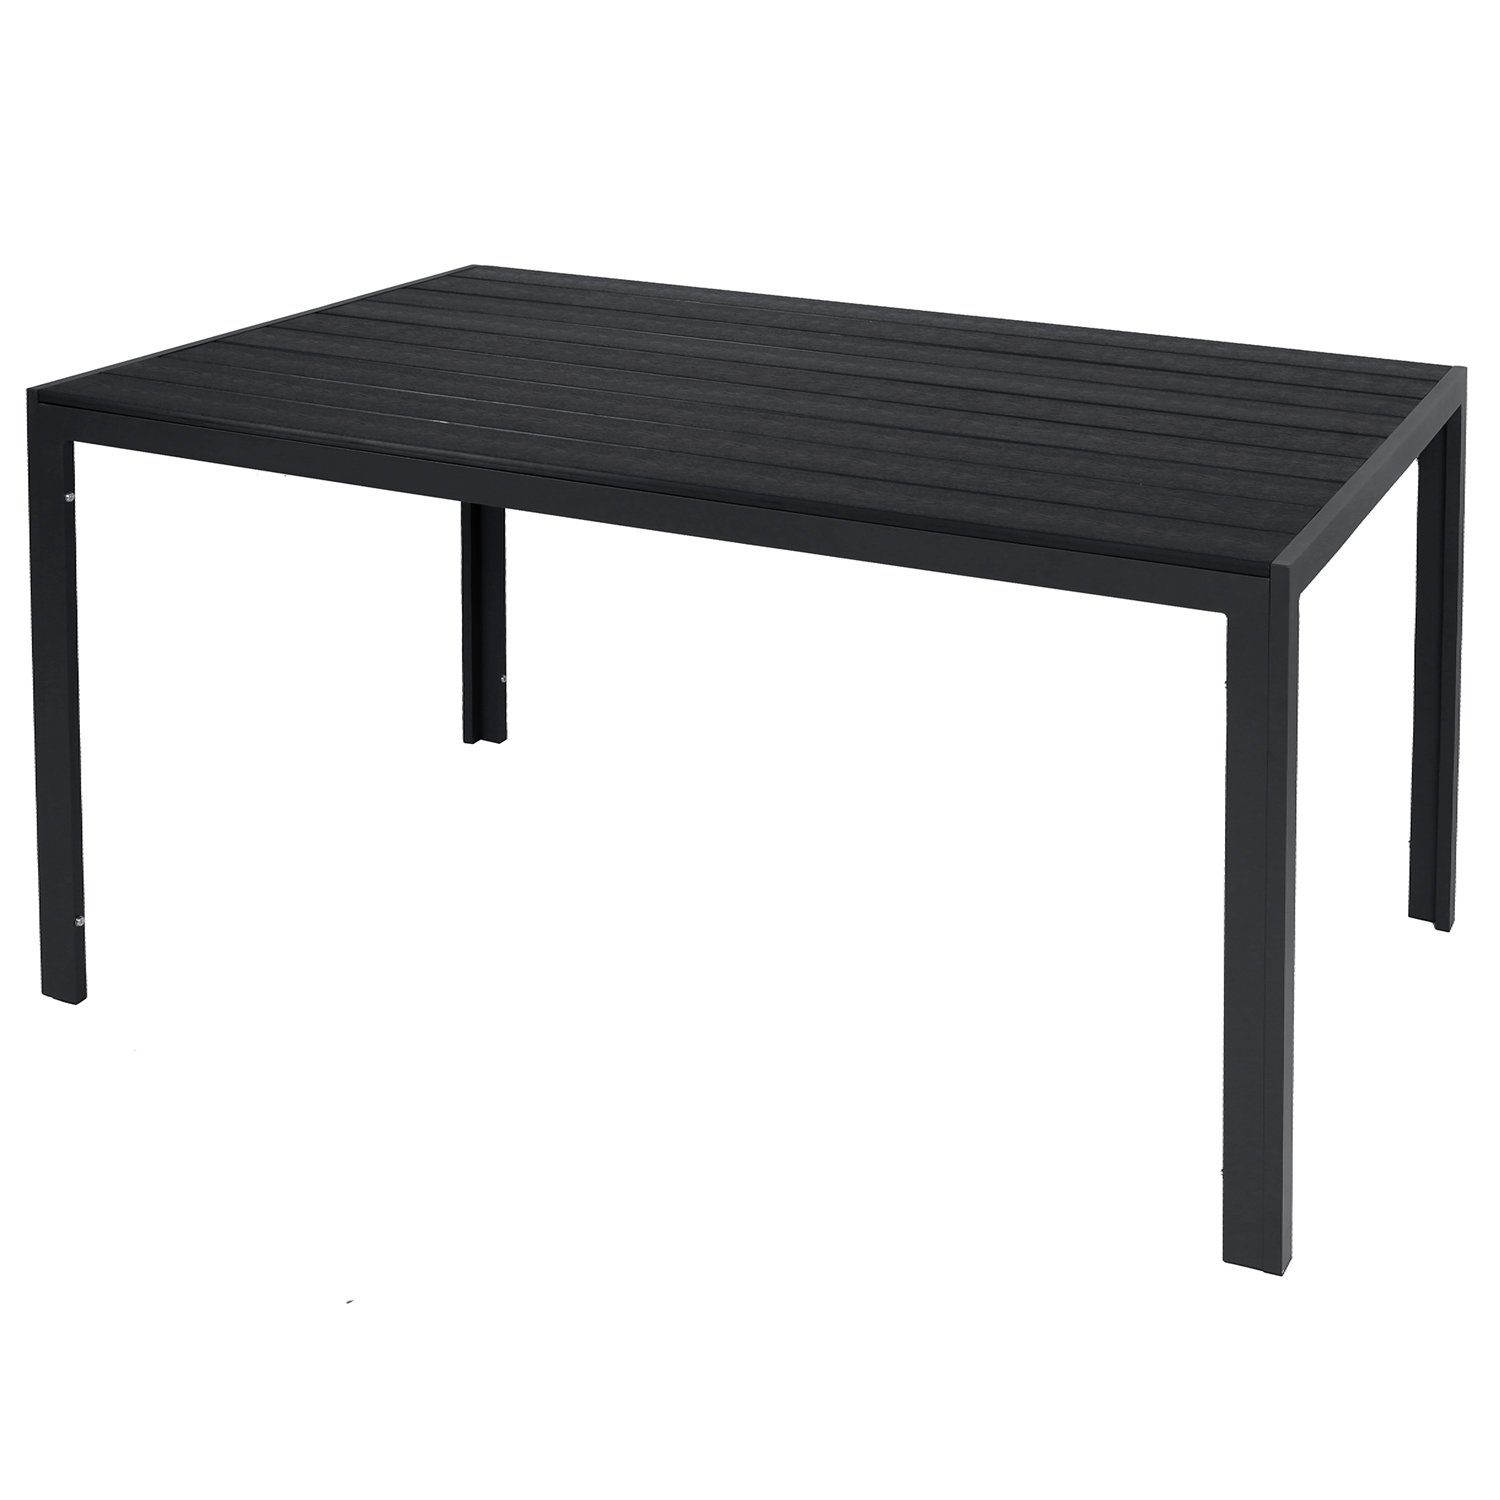 INDA-Exclusiv Küchentisch Gartentisch aus Polywood und Aluminium anthrazit - schwarz 150x90cm